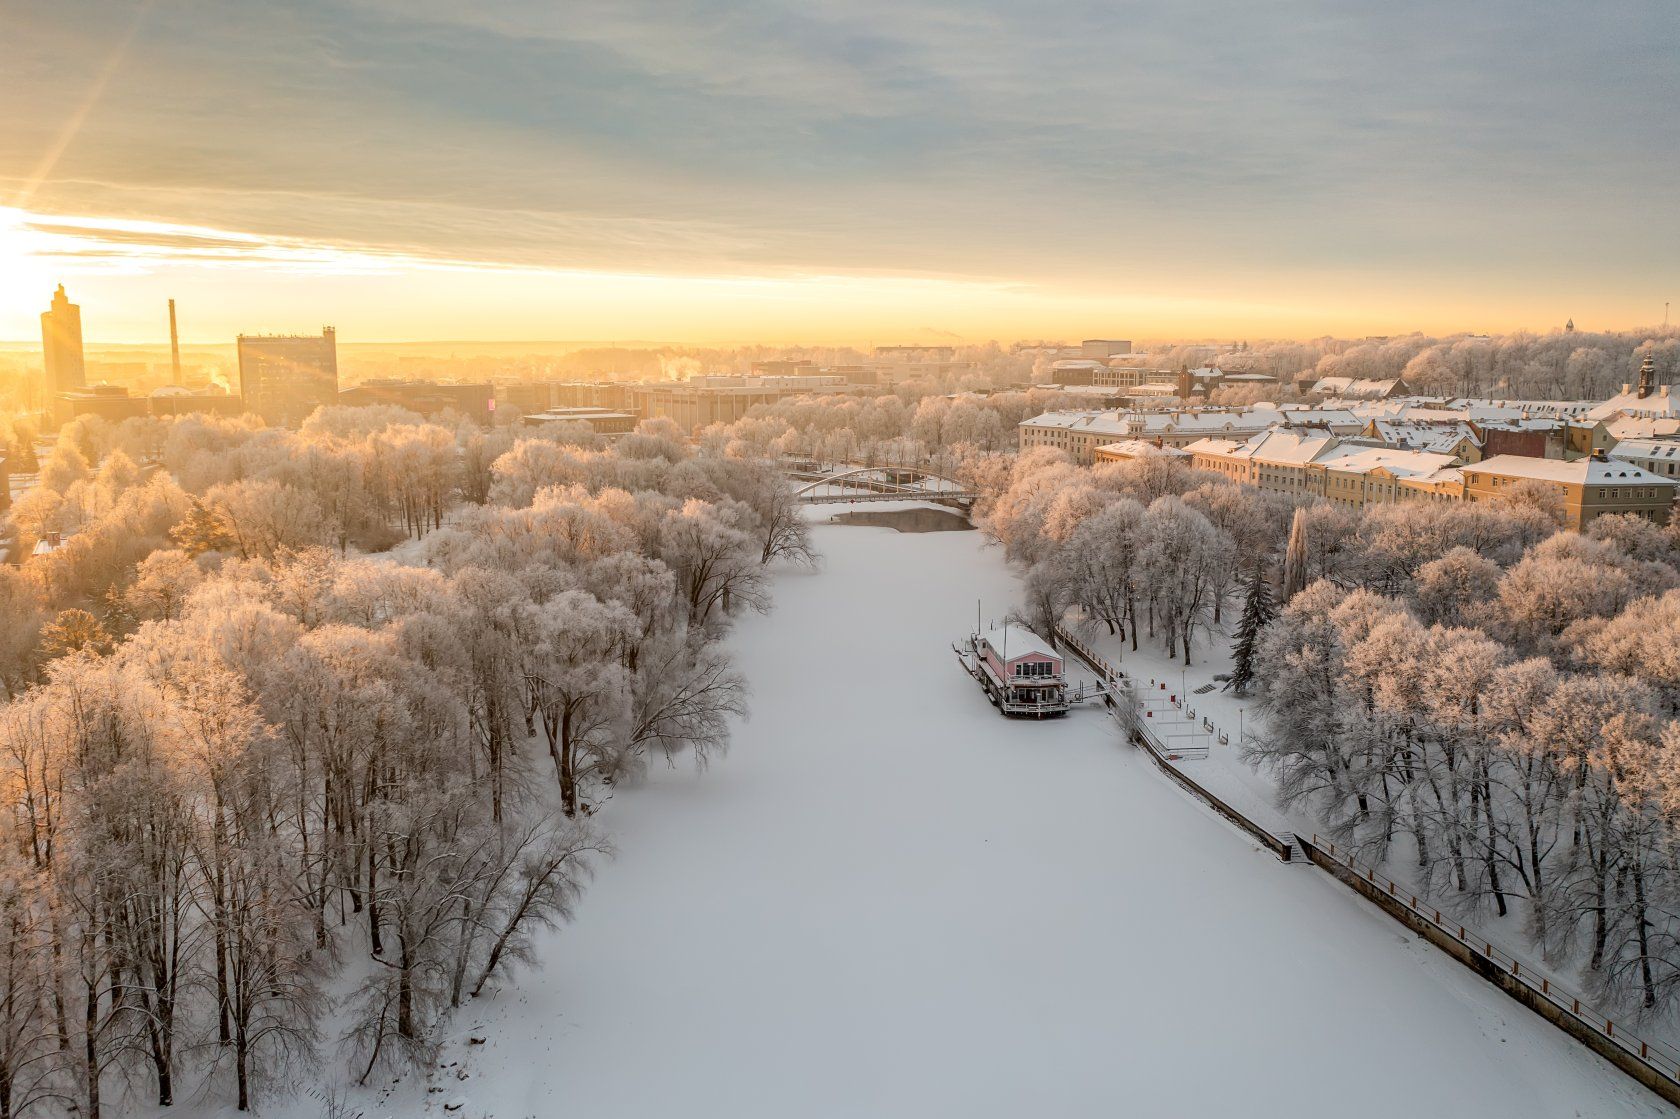 Ülejõe-Promenade schlängelt sich am Ufer des Emajõgi entlang, im verschneiten Winter